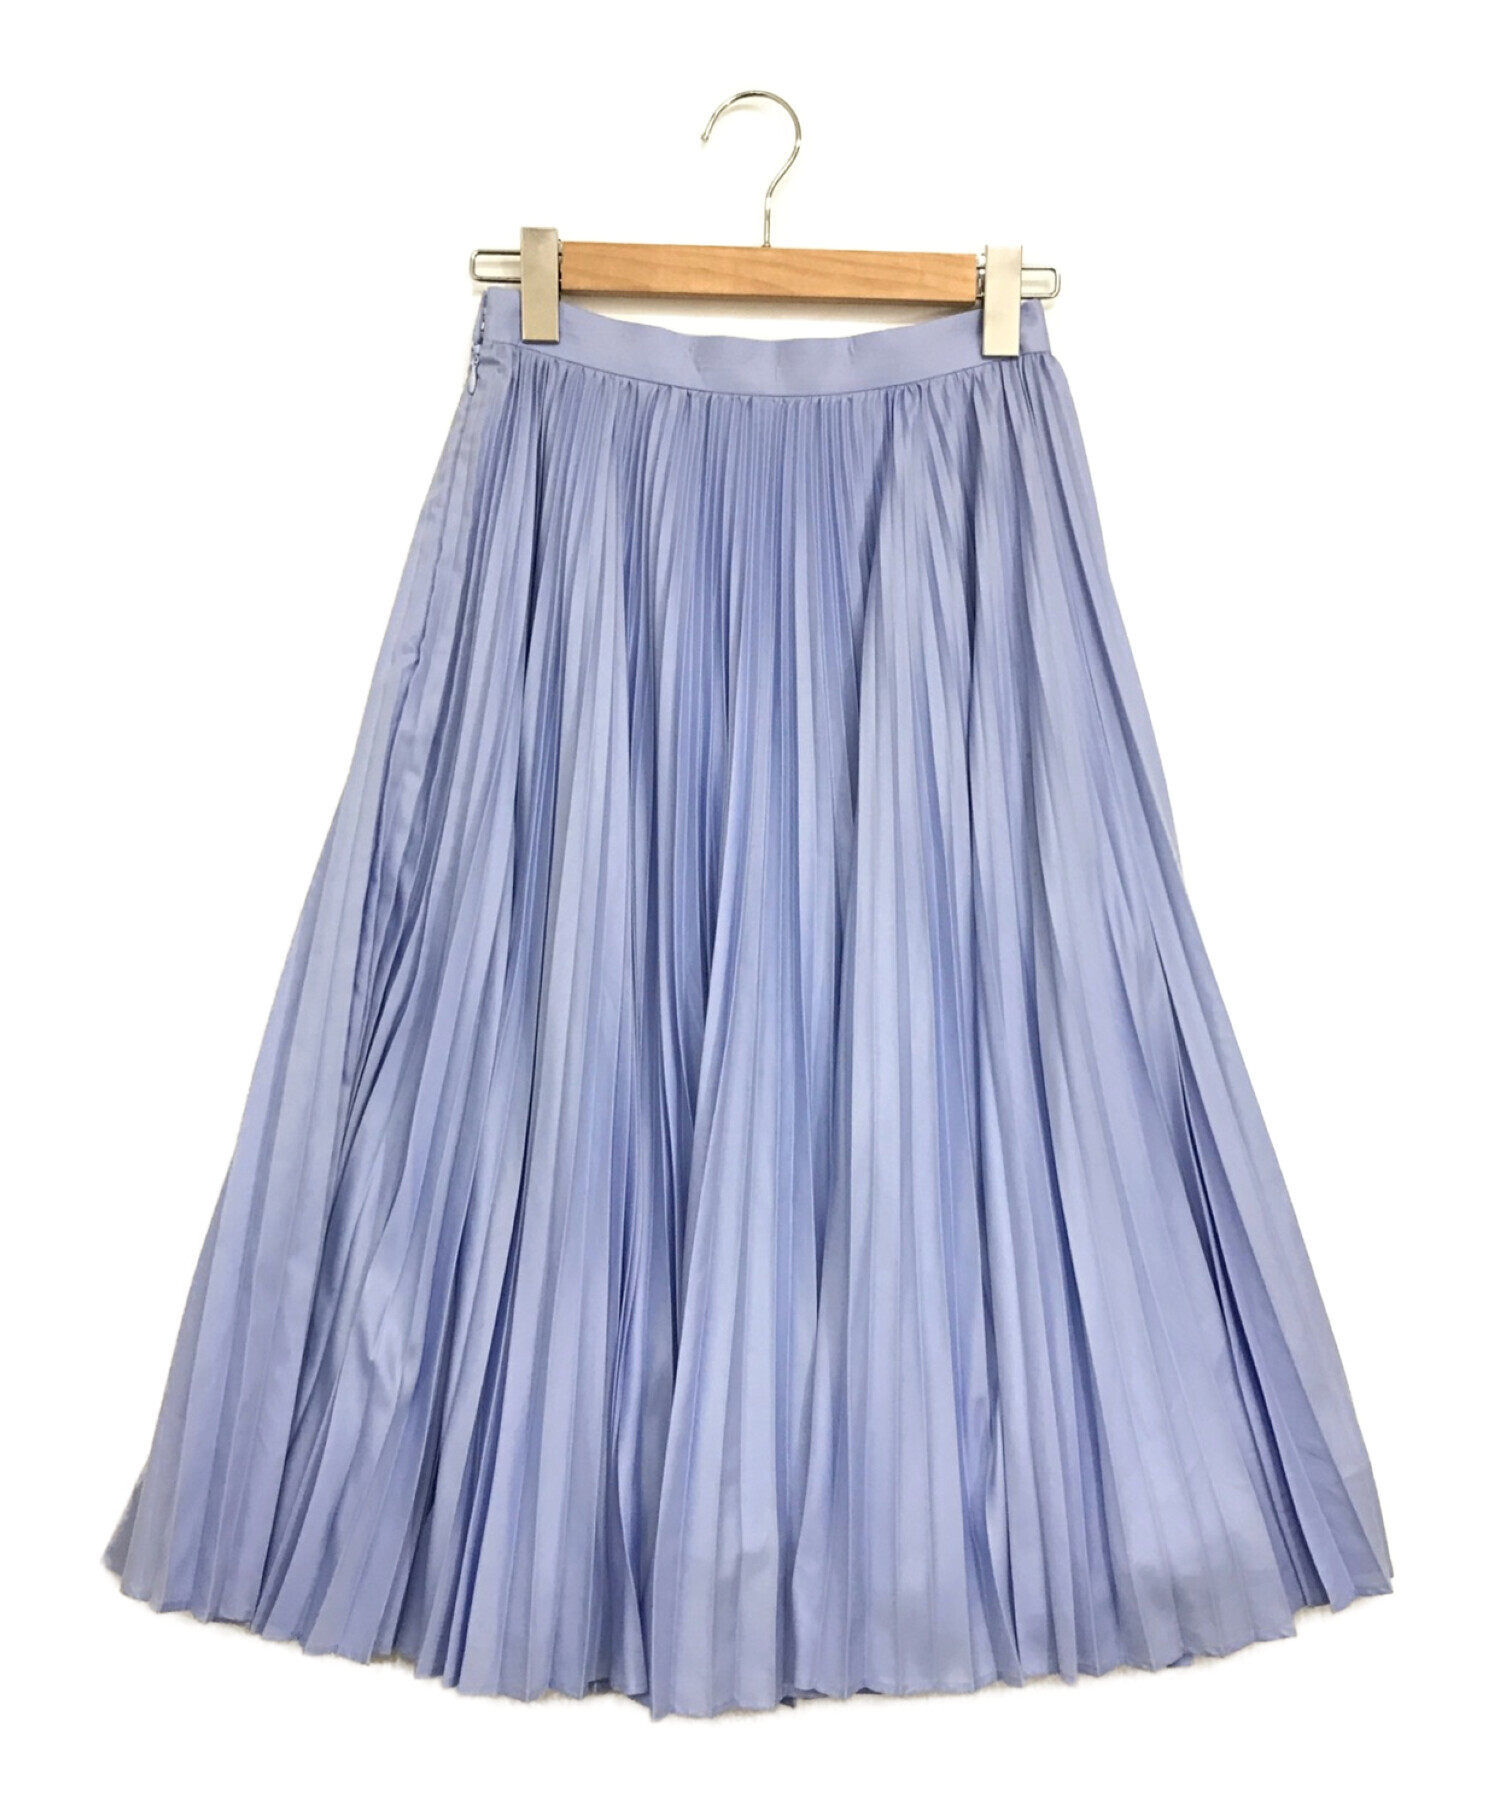 ENFOLD (エンフォルド) スパンブロードプリーツスカート ブルー サイズ:38